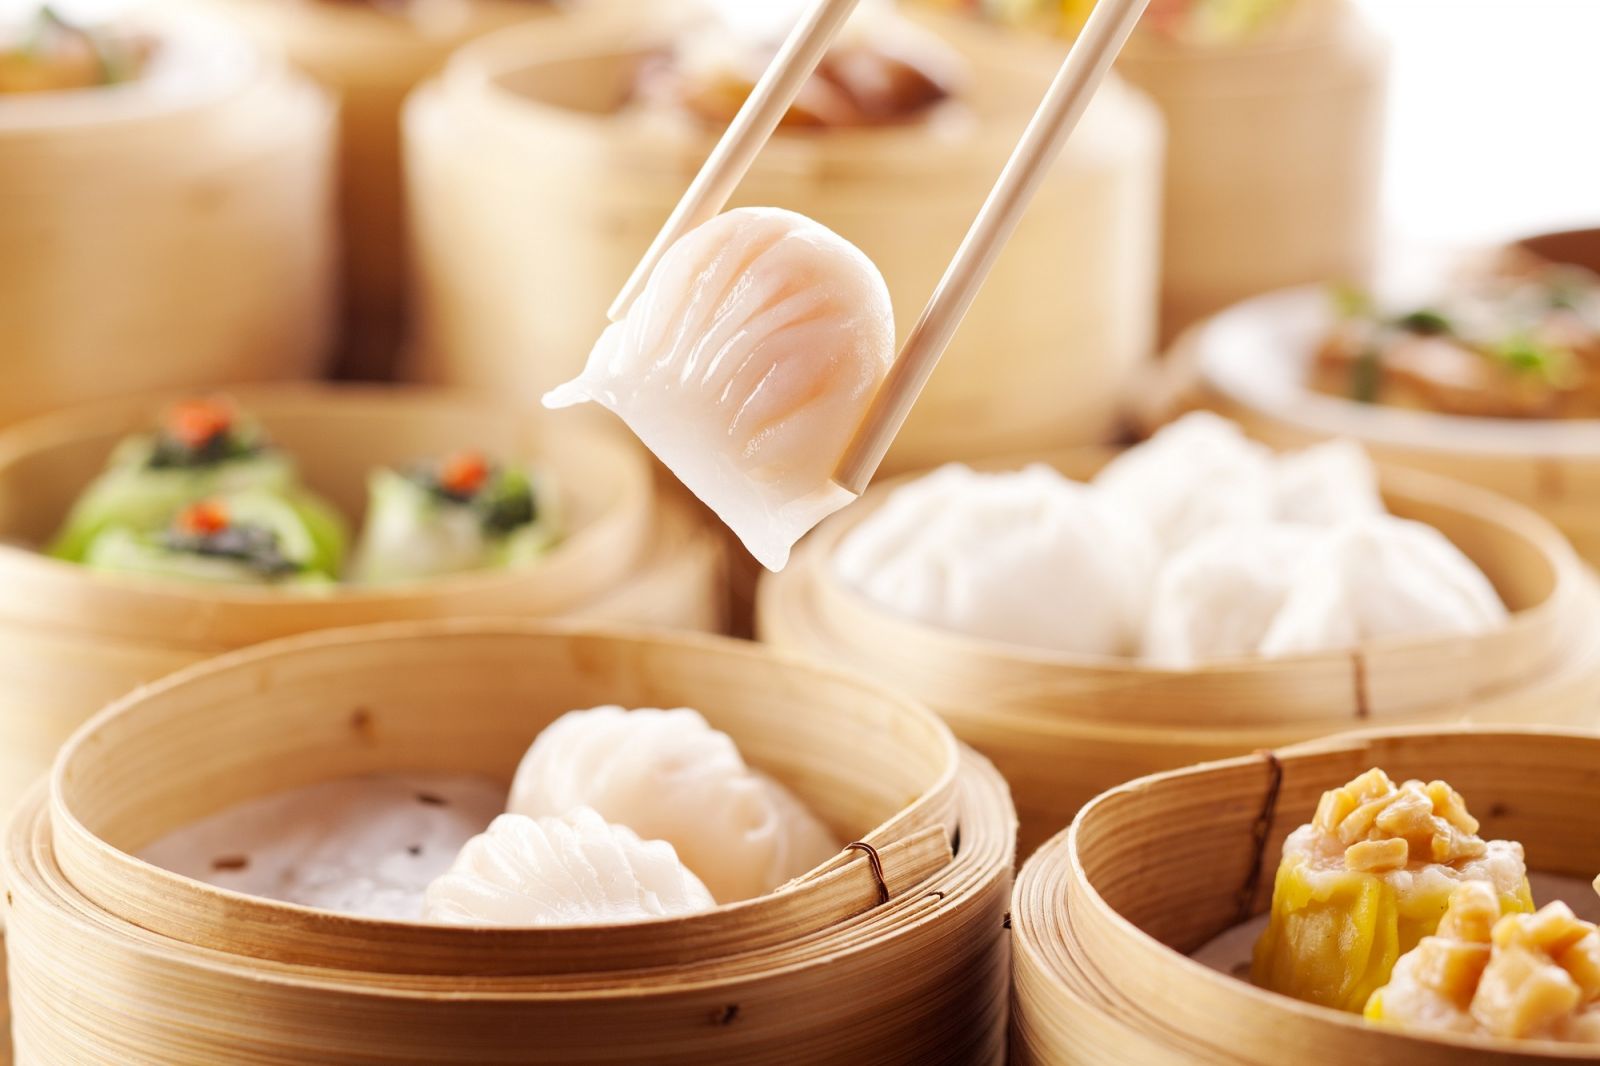 Man Ho Chinese Restaurant - Hong Kong SkyCity Marriott Hotel–_OKiBook Hong Kong and Macau Restaurant Buffet booking 餐廳和自助餐預訂_ All-You-Can-Eat Dim Sum Lunch